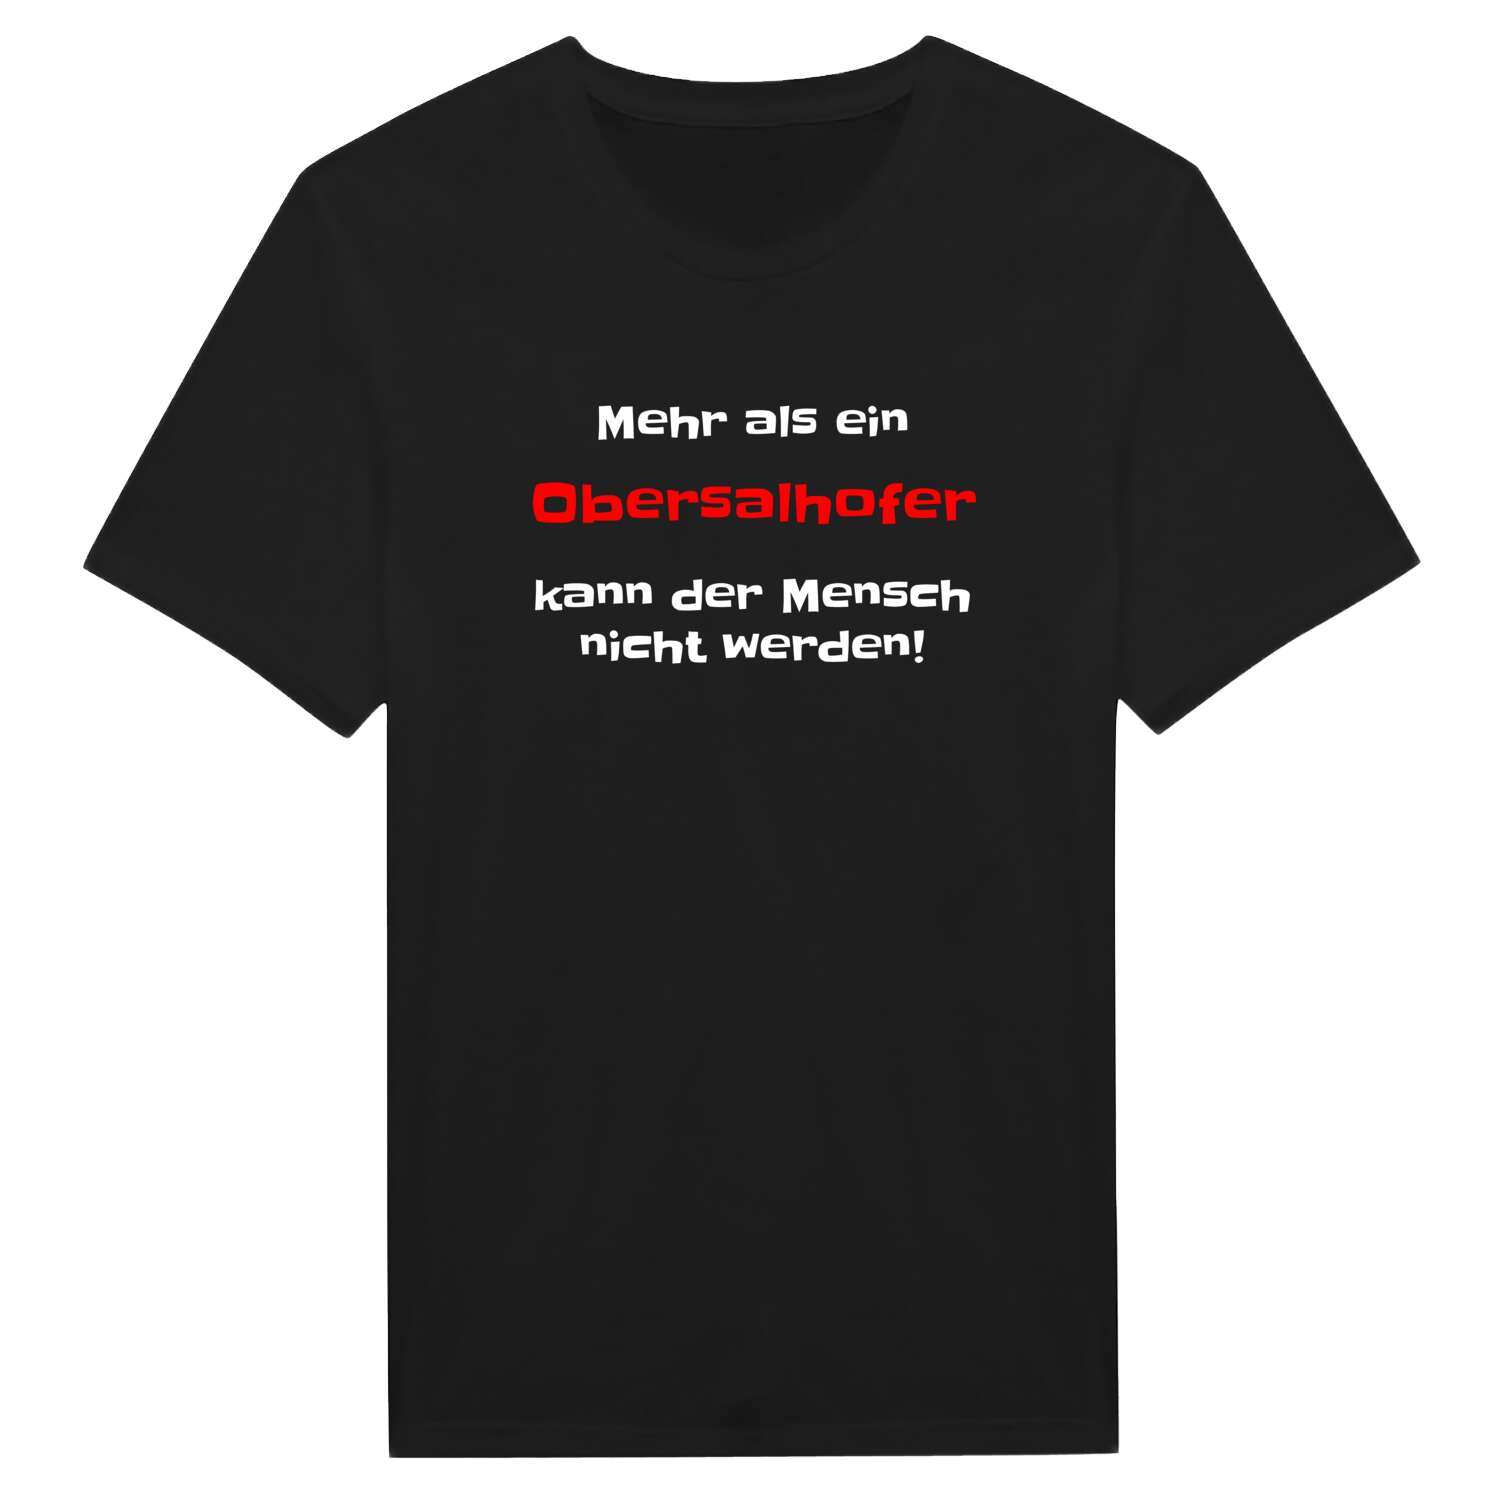 Obersalhof T-Shirt »Mehr als ein«